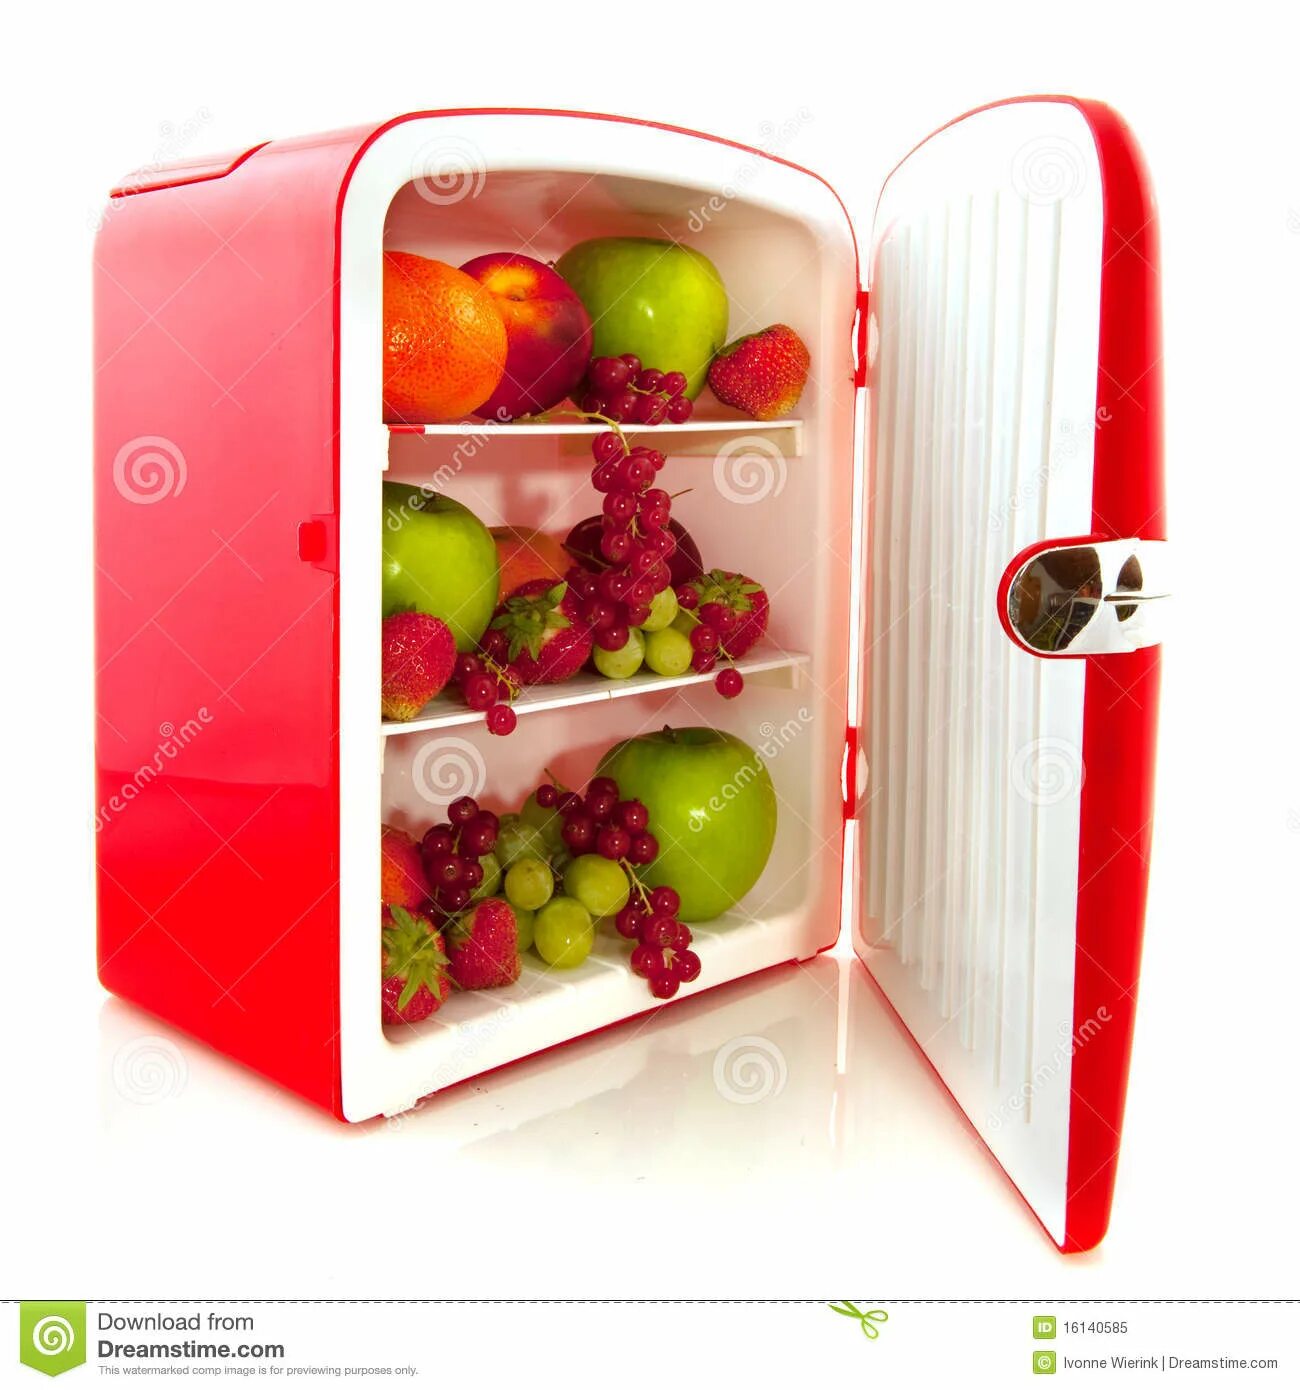 Холодильник с продуктами. Фрукты в холодильнике. Холодильник для овощей. Холодильник небольшой с продуктами. Фруктовые холодильники